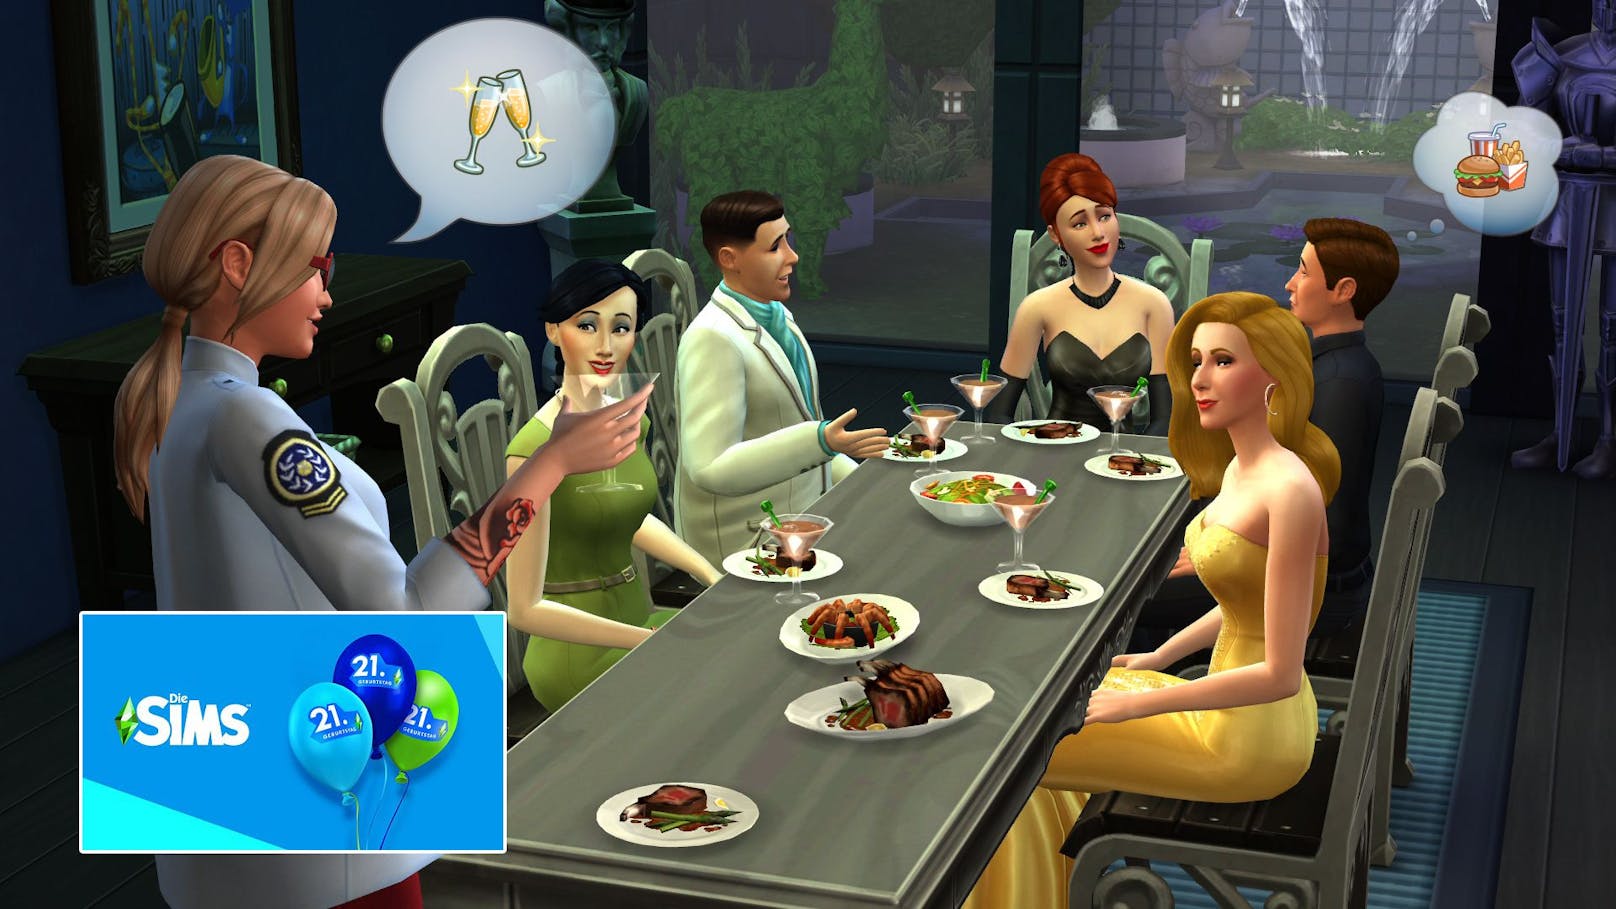 Die Sims feiert 21. Geburtstag mit kostenlosen Inhalten